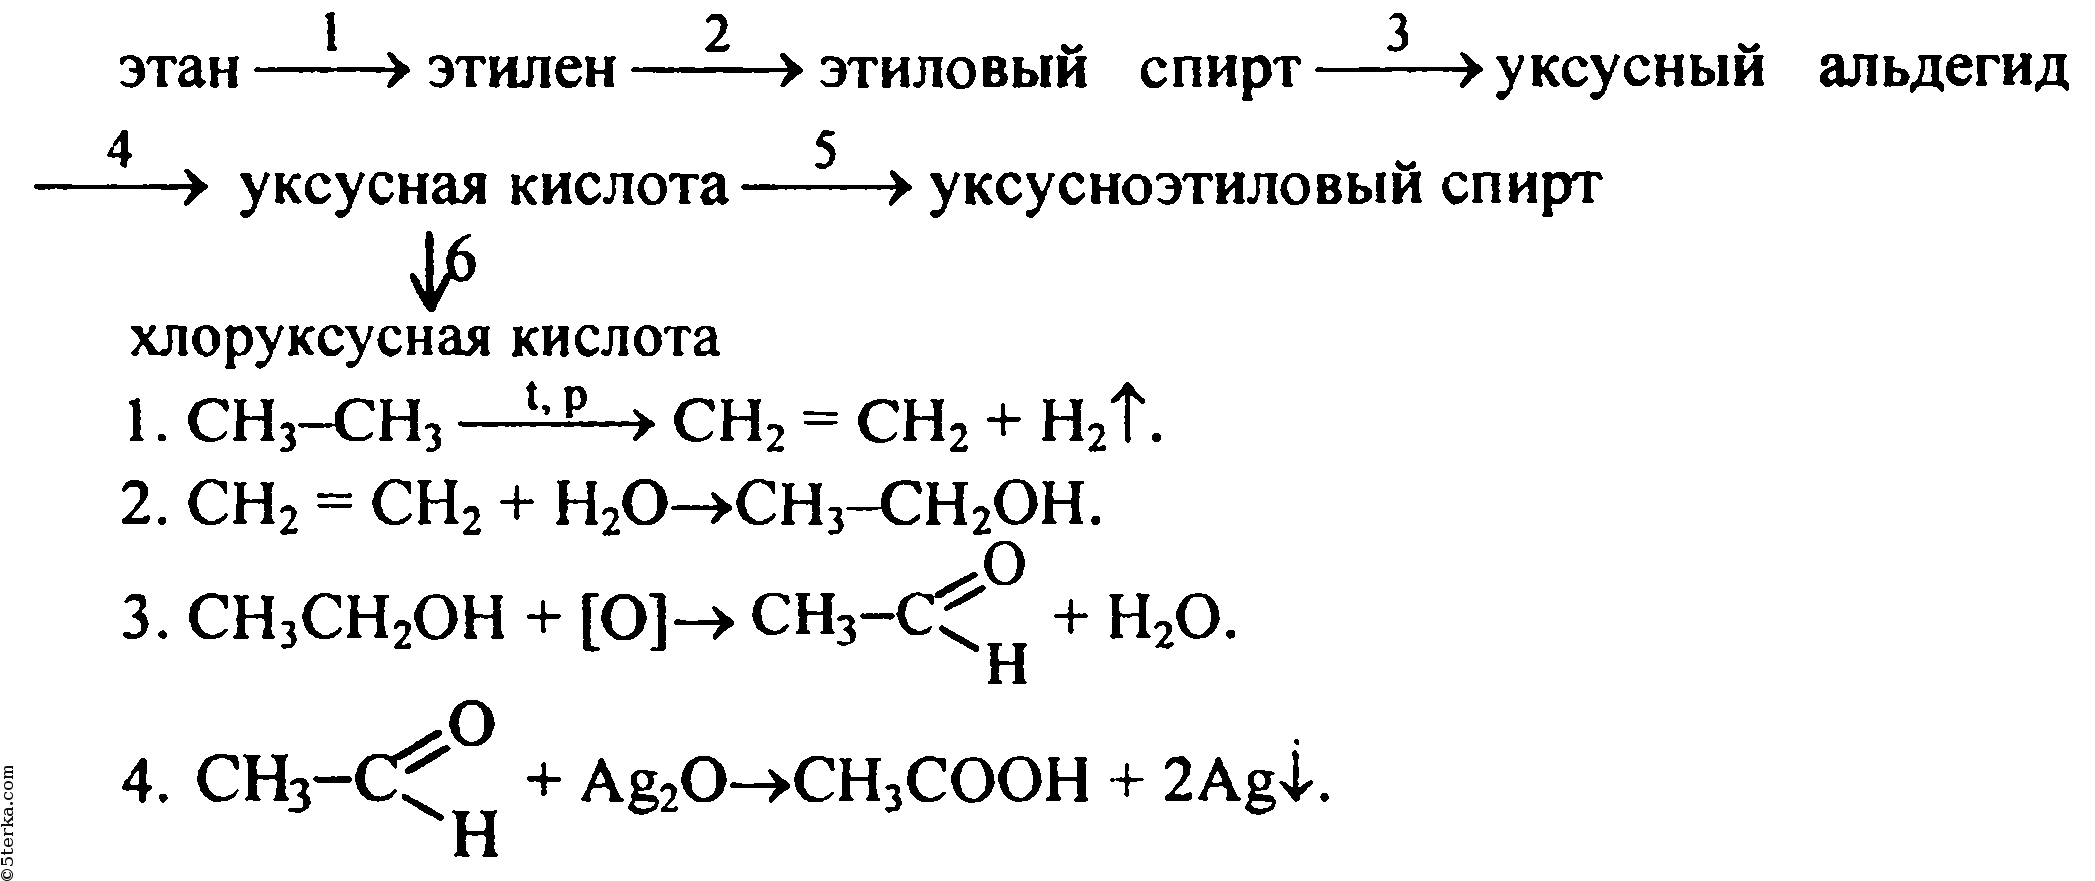 Из жира можно выделить путем химических превращений. Схема получения альдегидов из метана. Схема реакции уксусной кислоты.